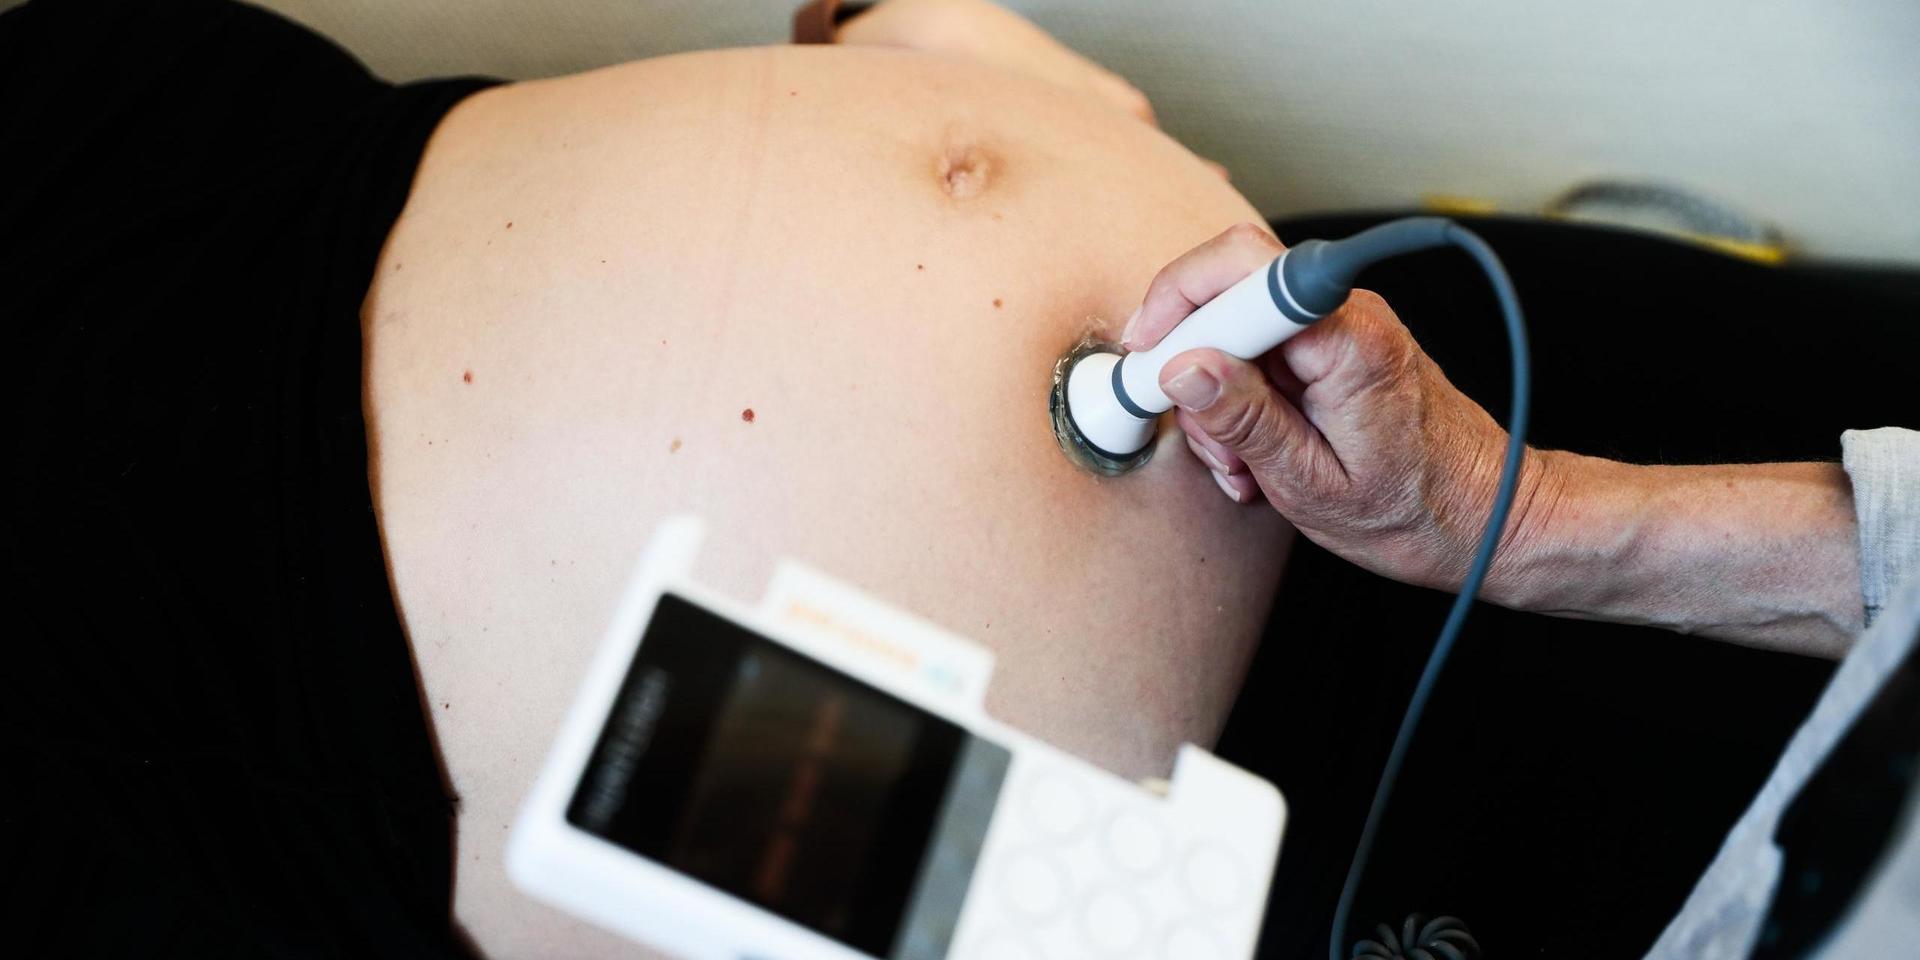 Att föda barn har aldrig varit säkrare någonstans än i Sverige idag, men en förlossning kan aldrig bli helt riskfri, skriver insändarskribenten.